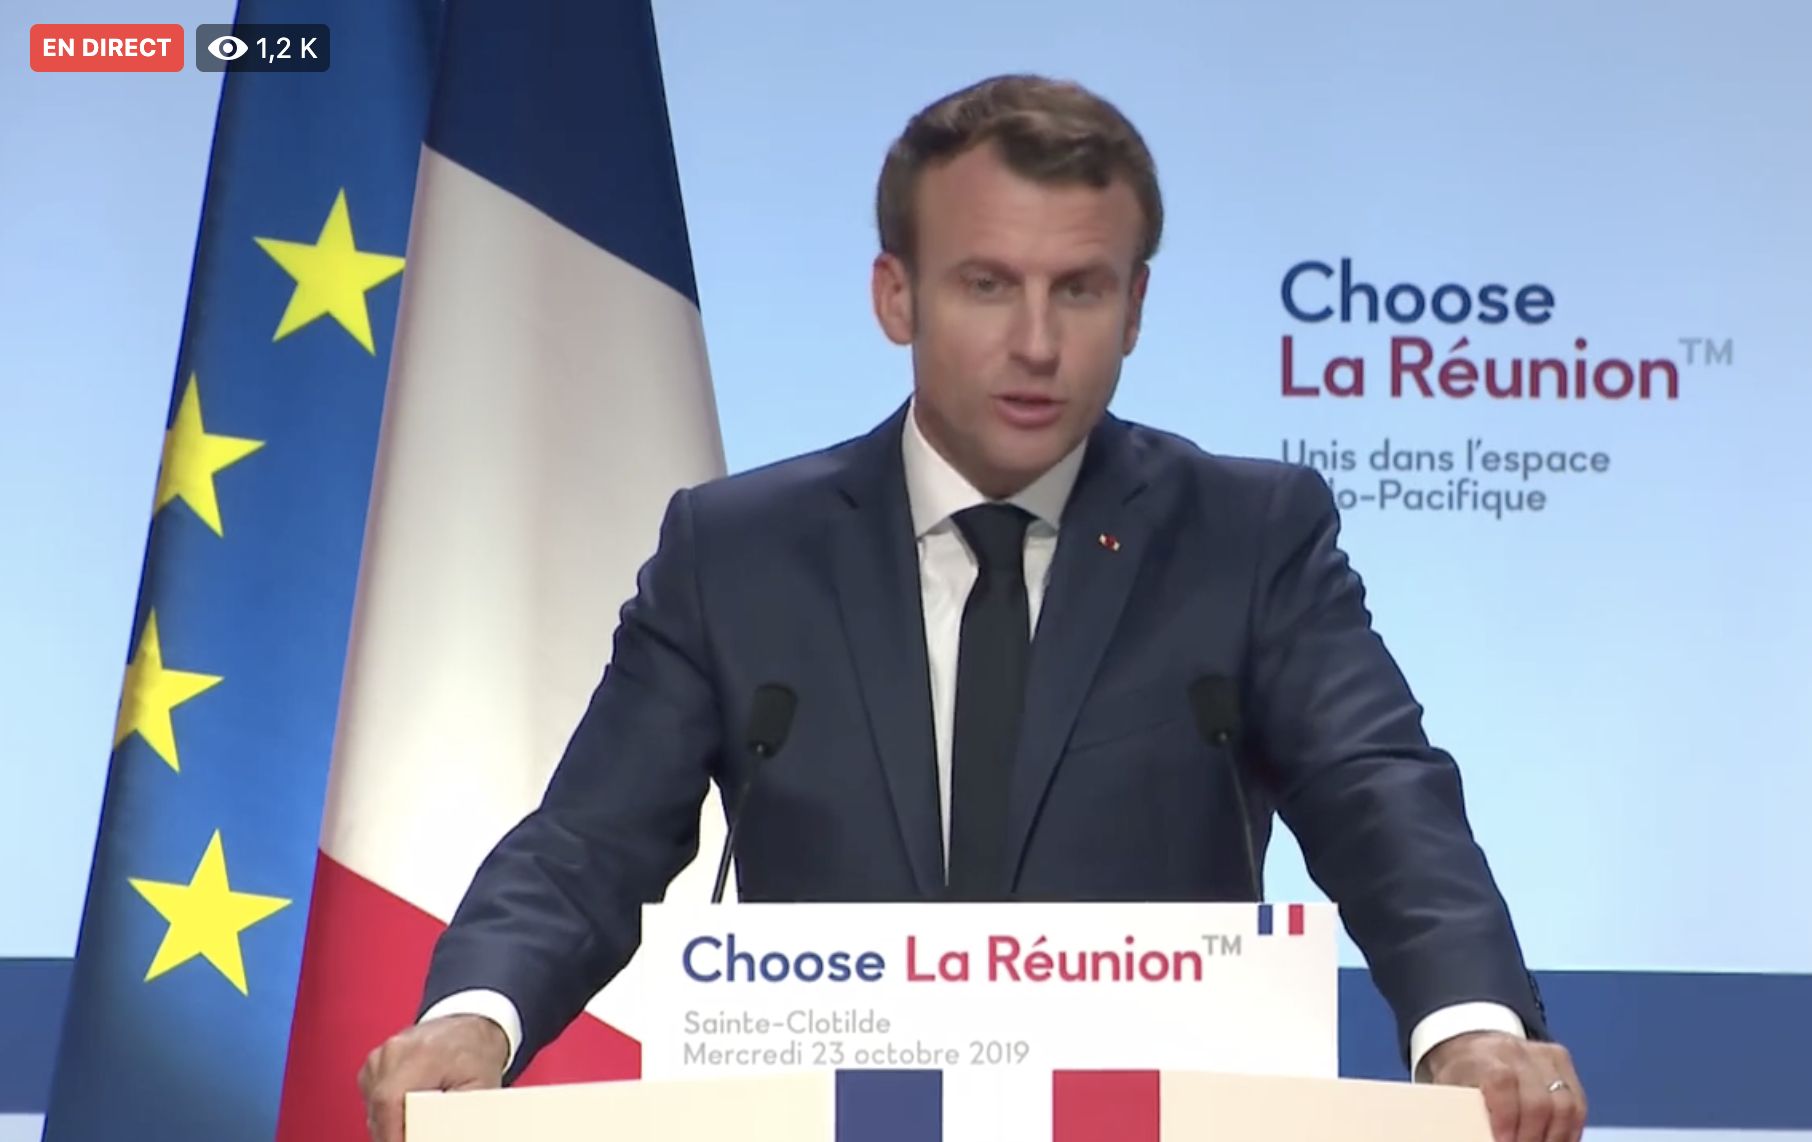 ▶️ Choose Réunion: Macron appelle les forces vives à faire de La Réunion l'épicentre de la zone